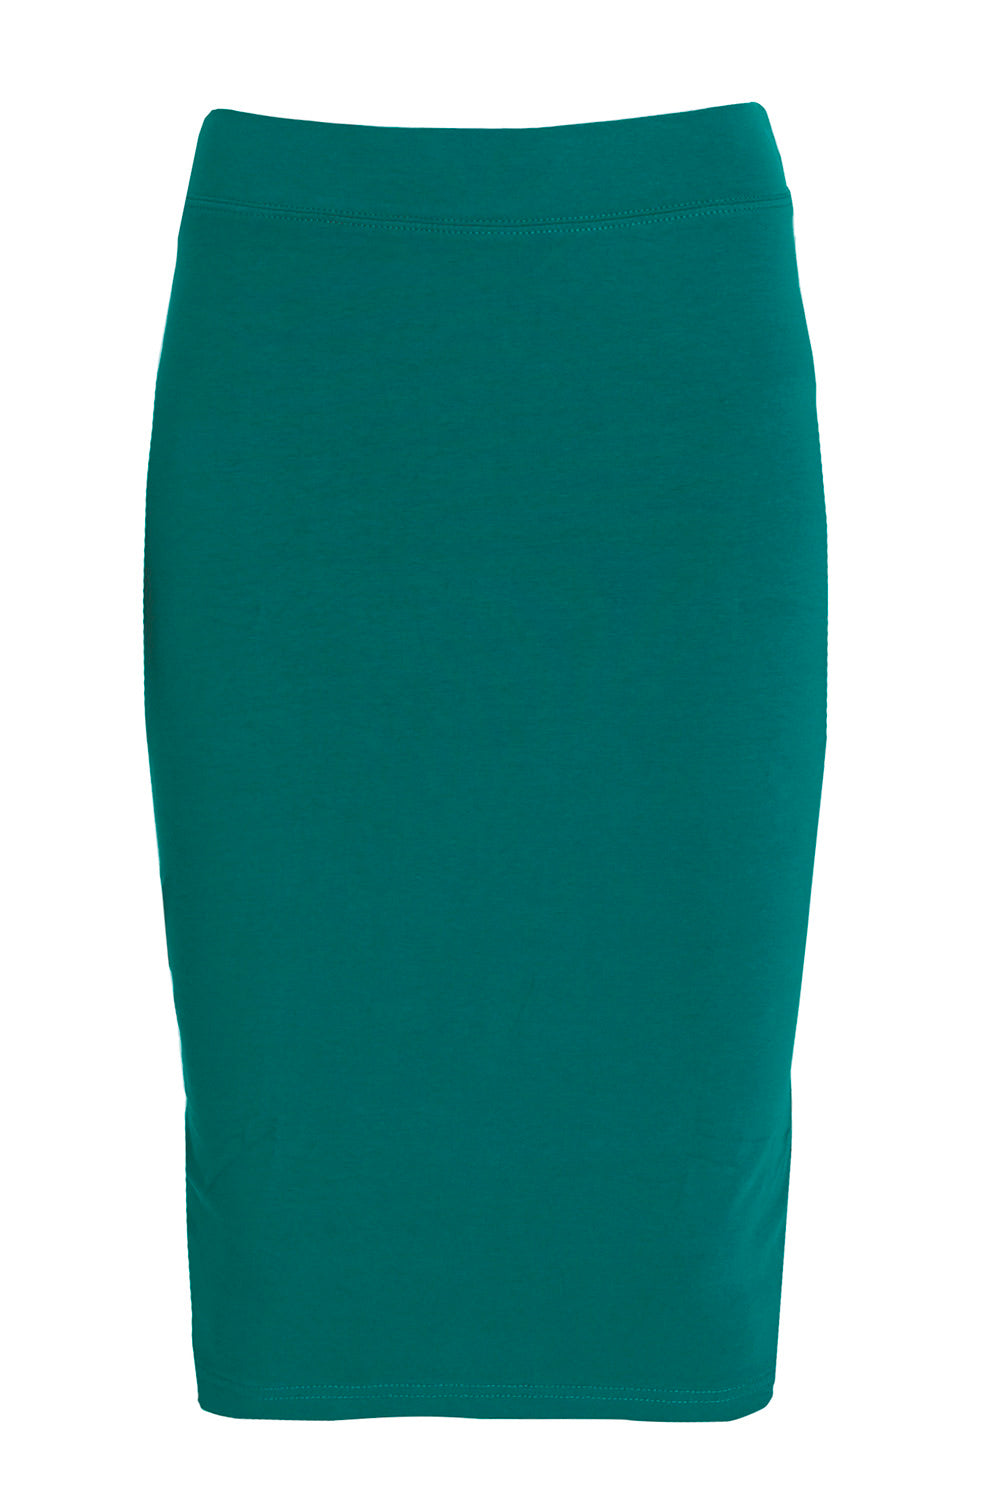 Esteez Shell Skirt - Cotton Spandex Lightweight Pencil skirt for GIRLS - EMERALD